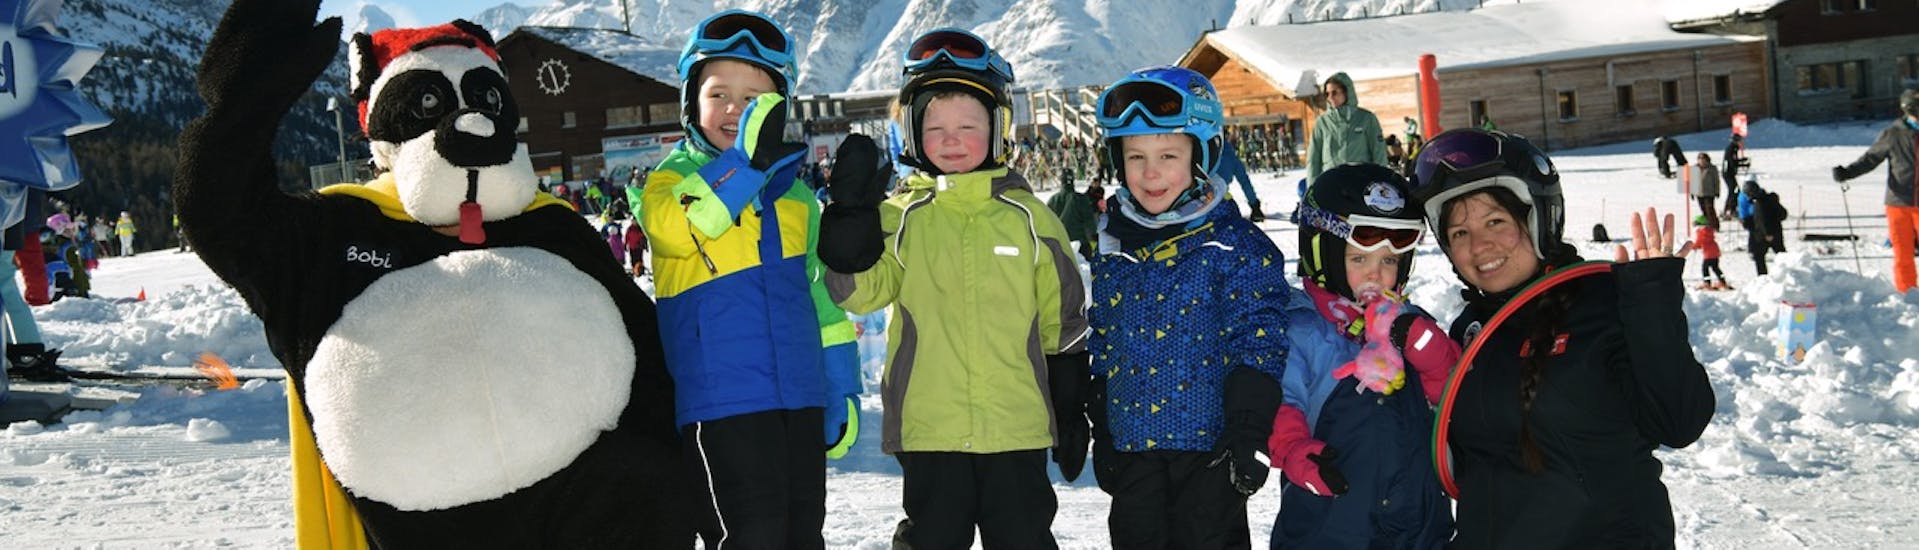 Clases de esquí para niños a partir de 2 años para debutantes.